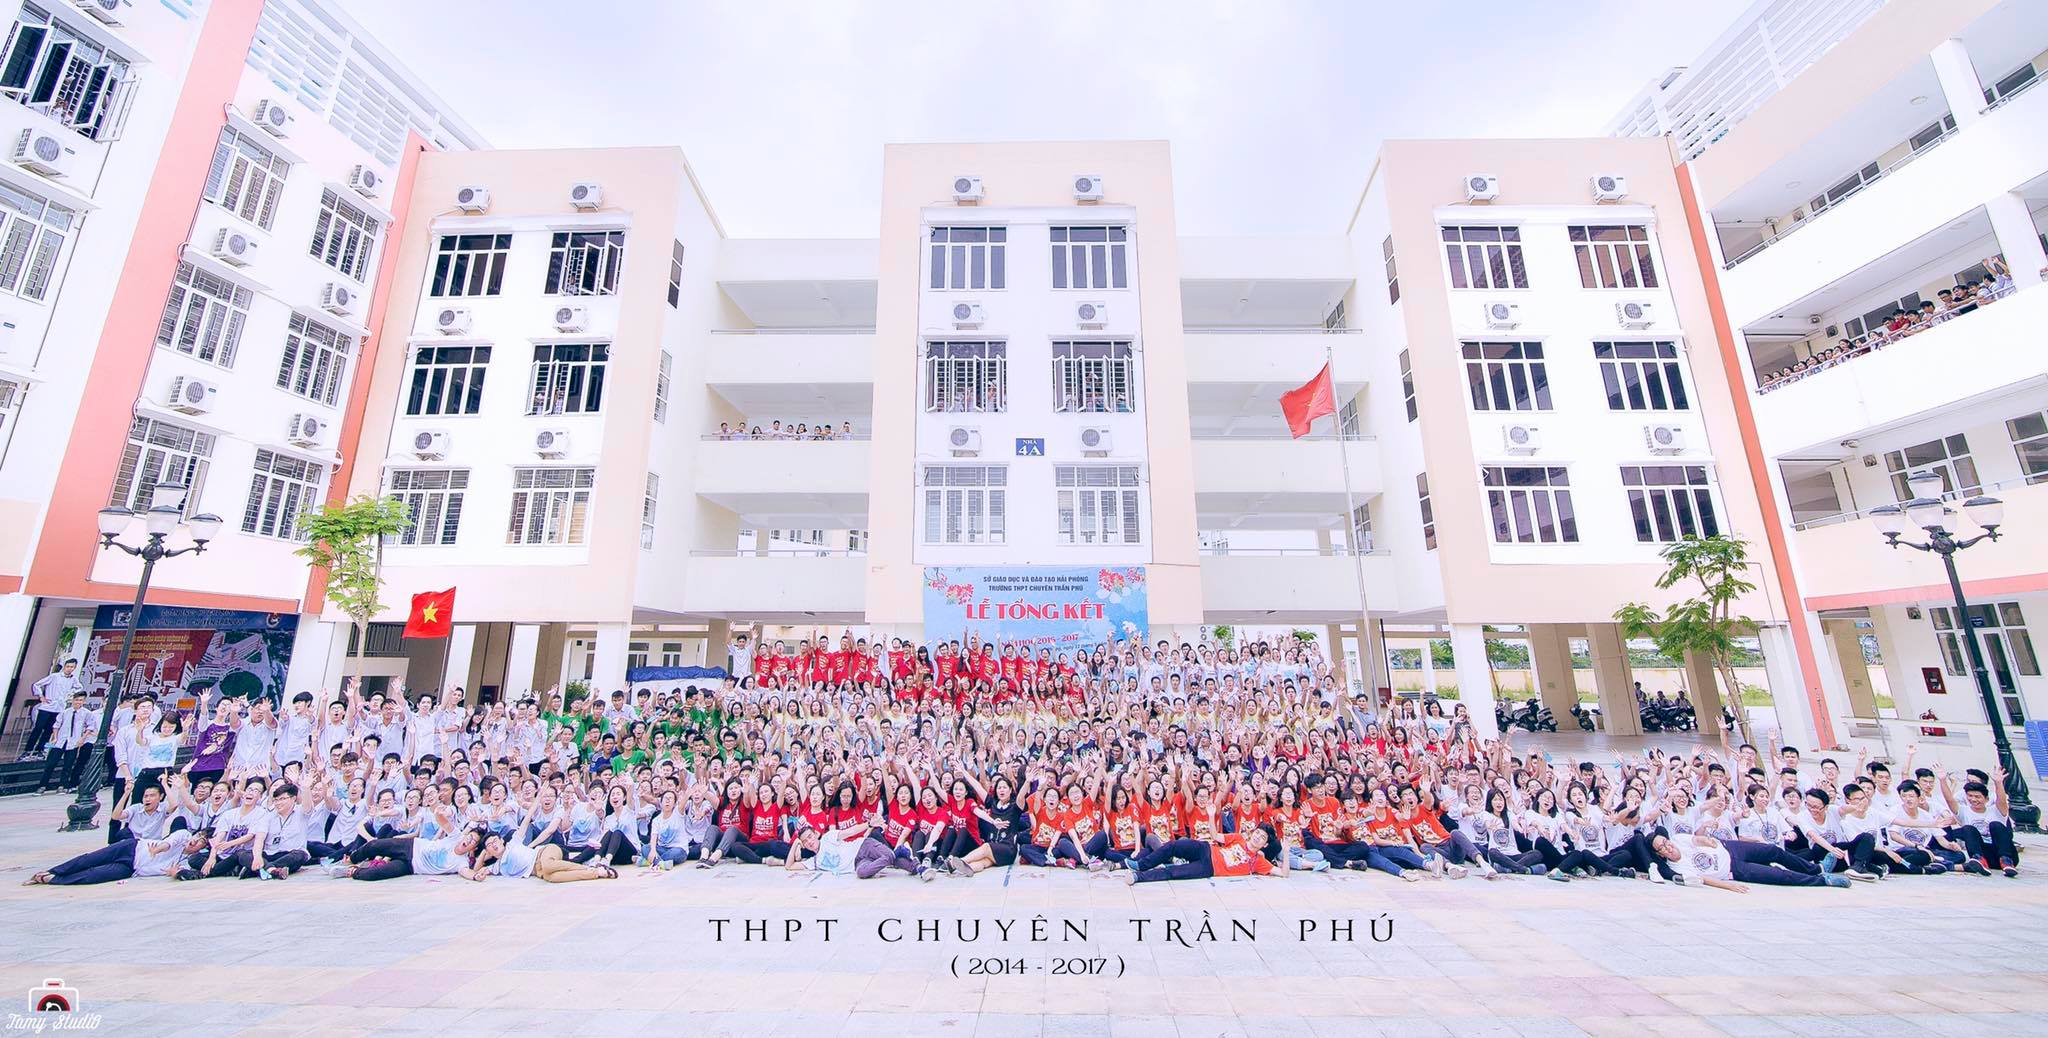 THPT chuyên Trần Phú ảnh 2